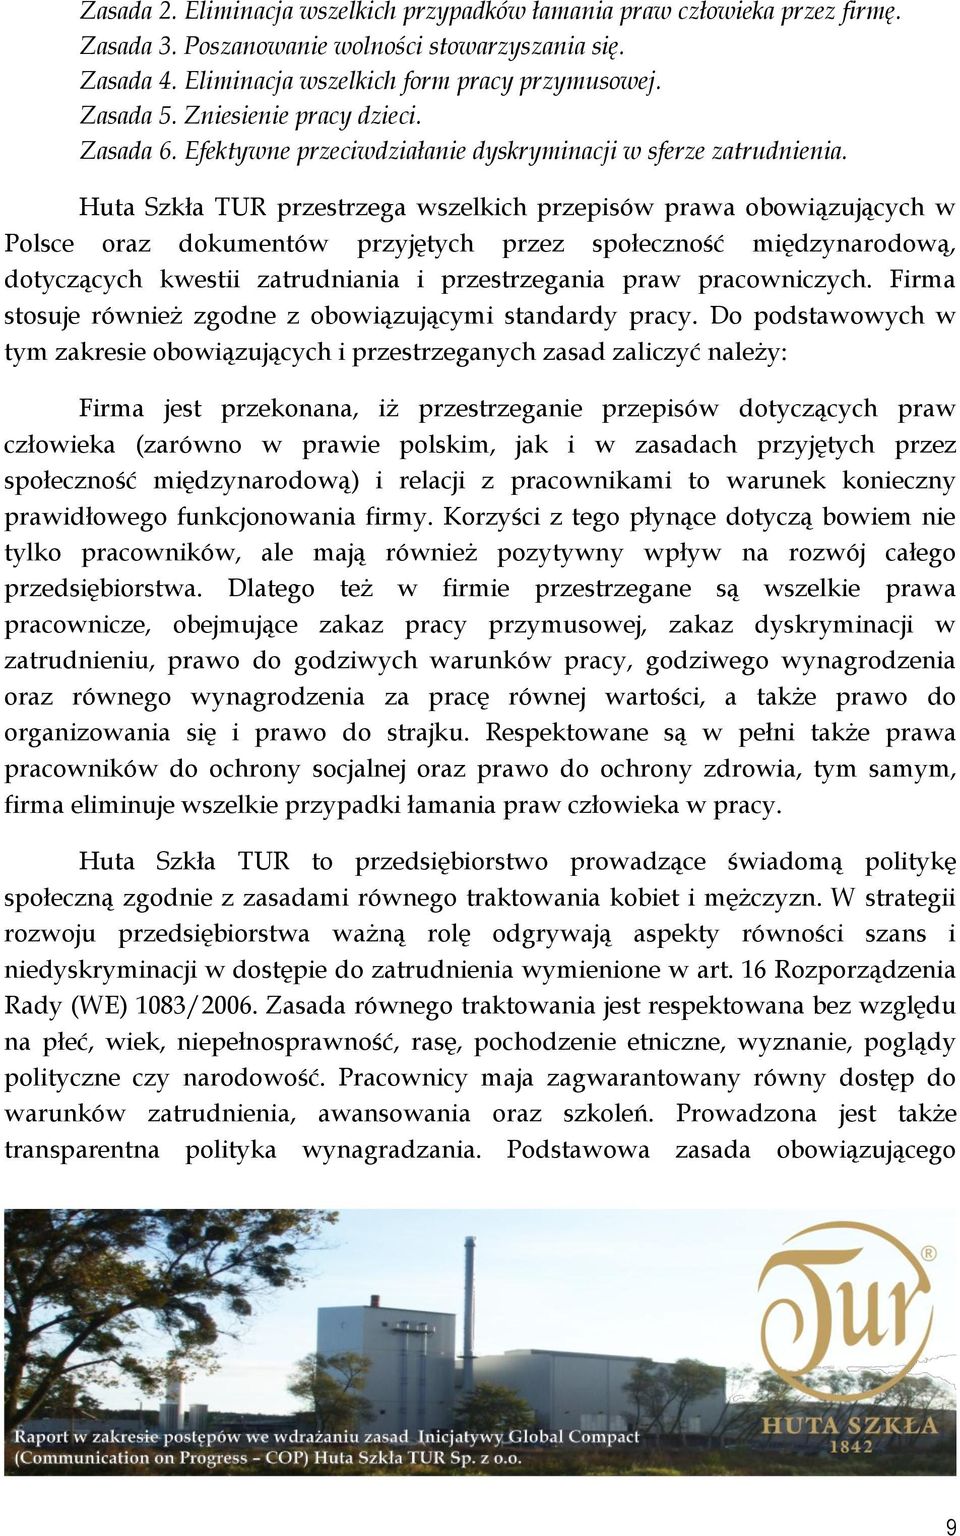 Huta Szkła TUR przestrzega wszelkich przepisów prawa obowiązujących w Polsce oraz dokumentów przyjętych przez społeczność międzynarodową, dotyczących kwestii zatrudniania i przestrzegania praw